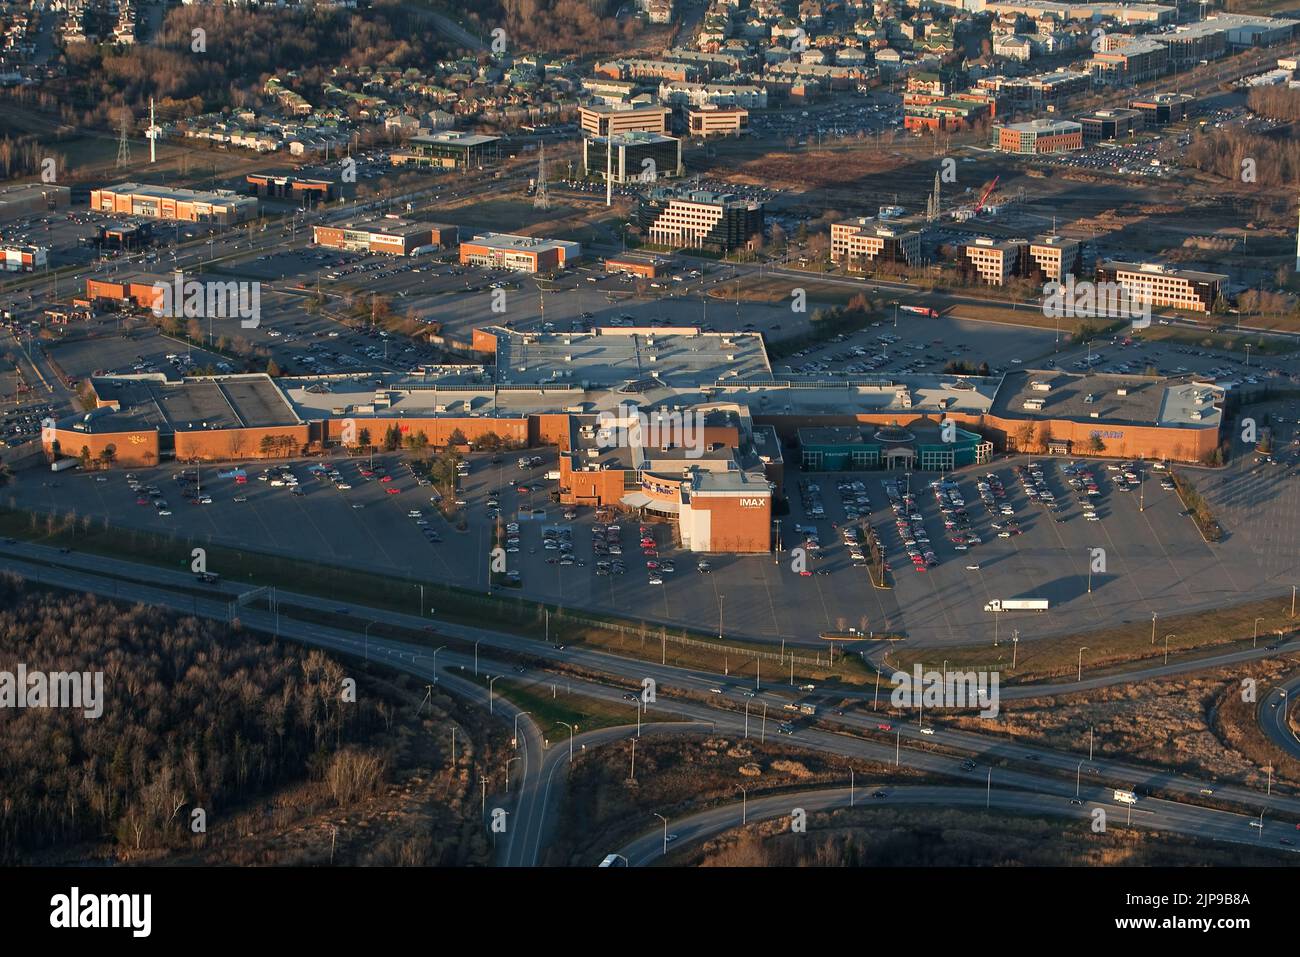 Das Einkaufszentrum Les Galleries de la Capitale in der Stadt Quebec ist auf diesem Luftbild vom 11. November 2009 abgebildet. Meistbesuchtes Einkaufszentrum das größte Einkaufszentrum der Stadt, Les Galleries de la Capitale, verfügt über 280 Geschäfte, 35 Restaurants und das IMAX-Kino mit der größten Leinwand in Kanada. Stockfoto